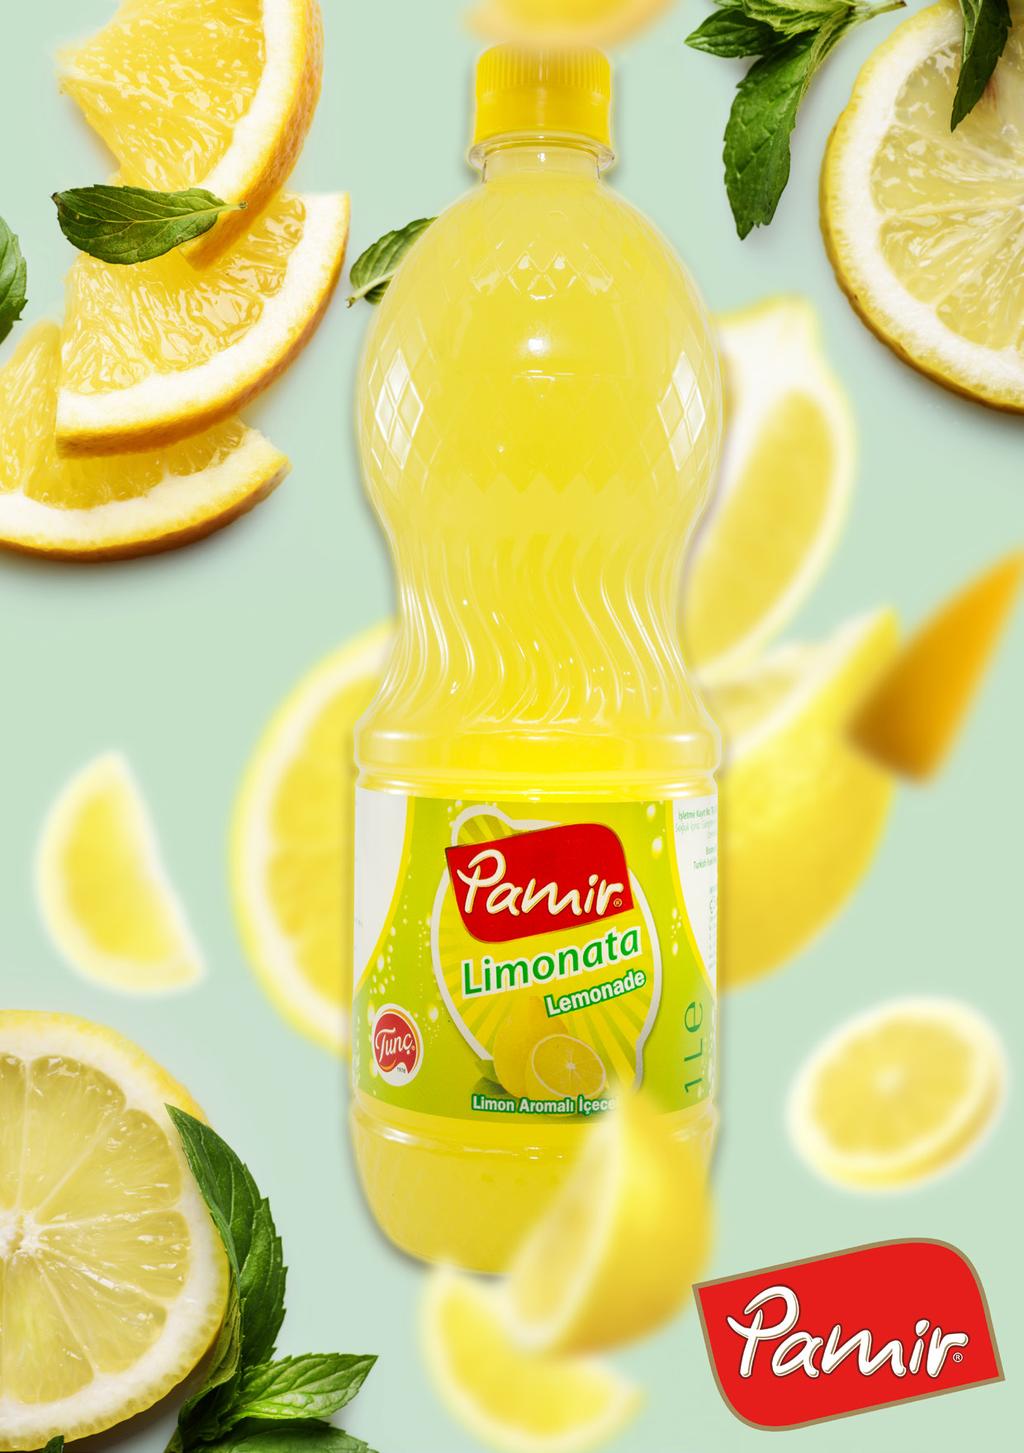 Uluslararası Lezzet ve Kalite Enstitüsü tarafından Üstün Lezzet Ödülü ne layık görülen Pamir Limonata; lezzeti ve kalitesiyle Avrupa nın en ünlü içecek